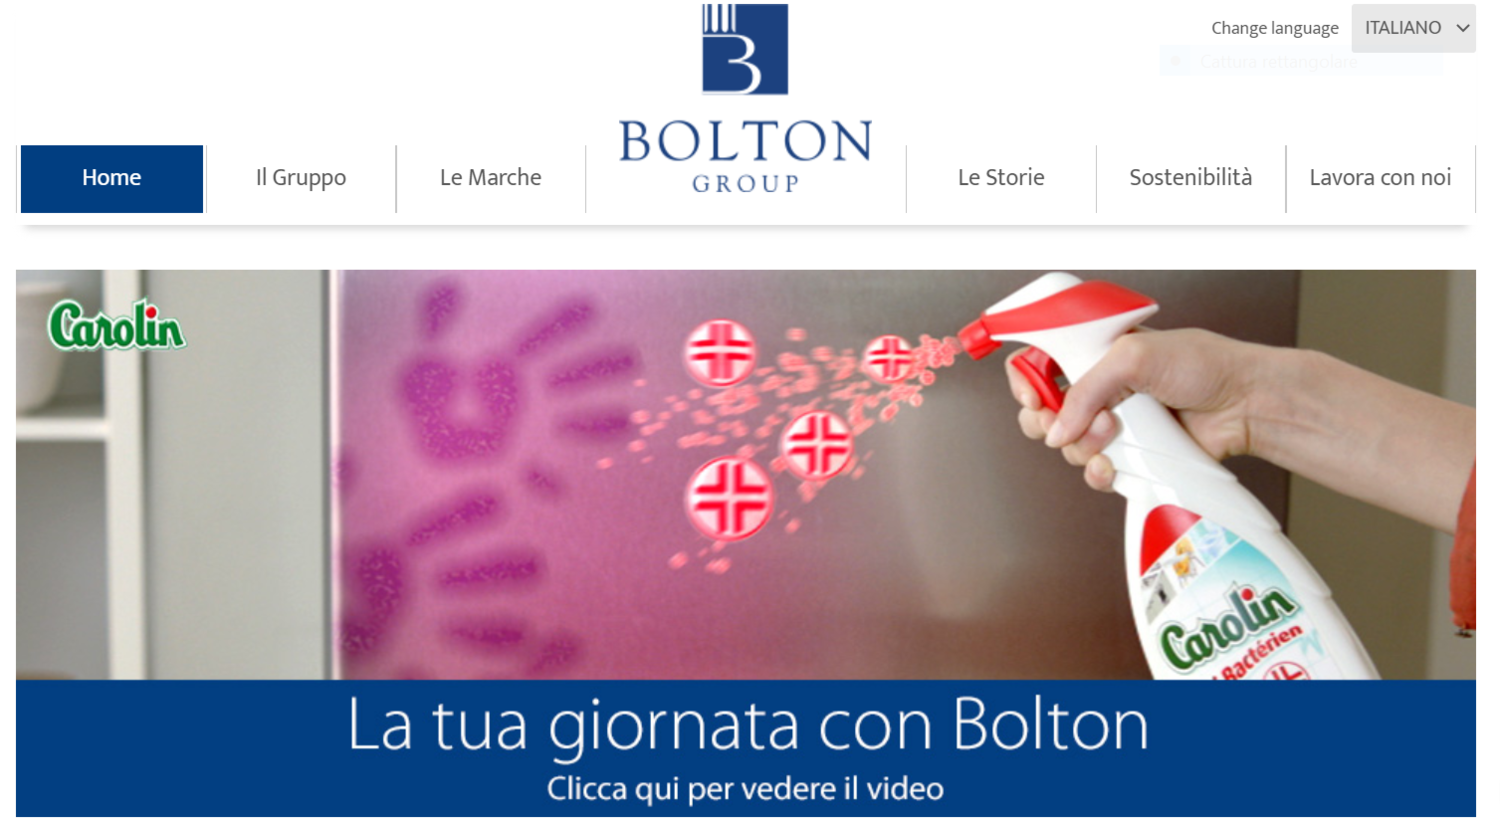 Bolton Group aderisce al global compact delle nazioni unite 